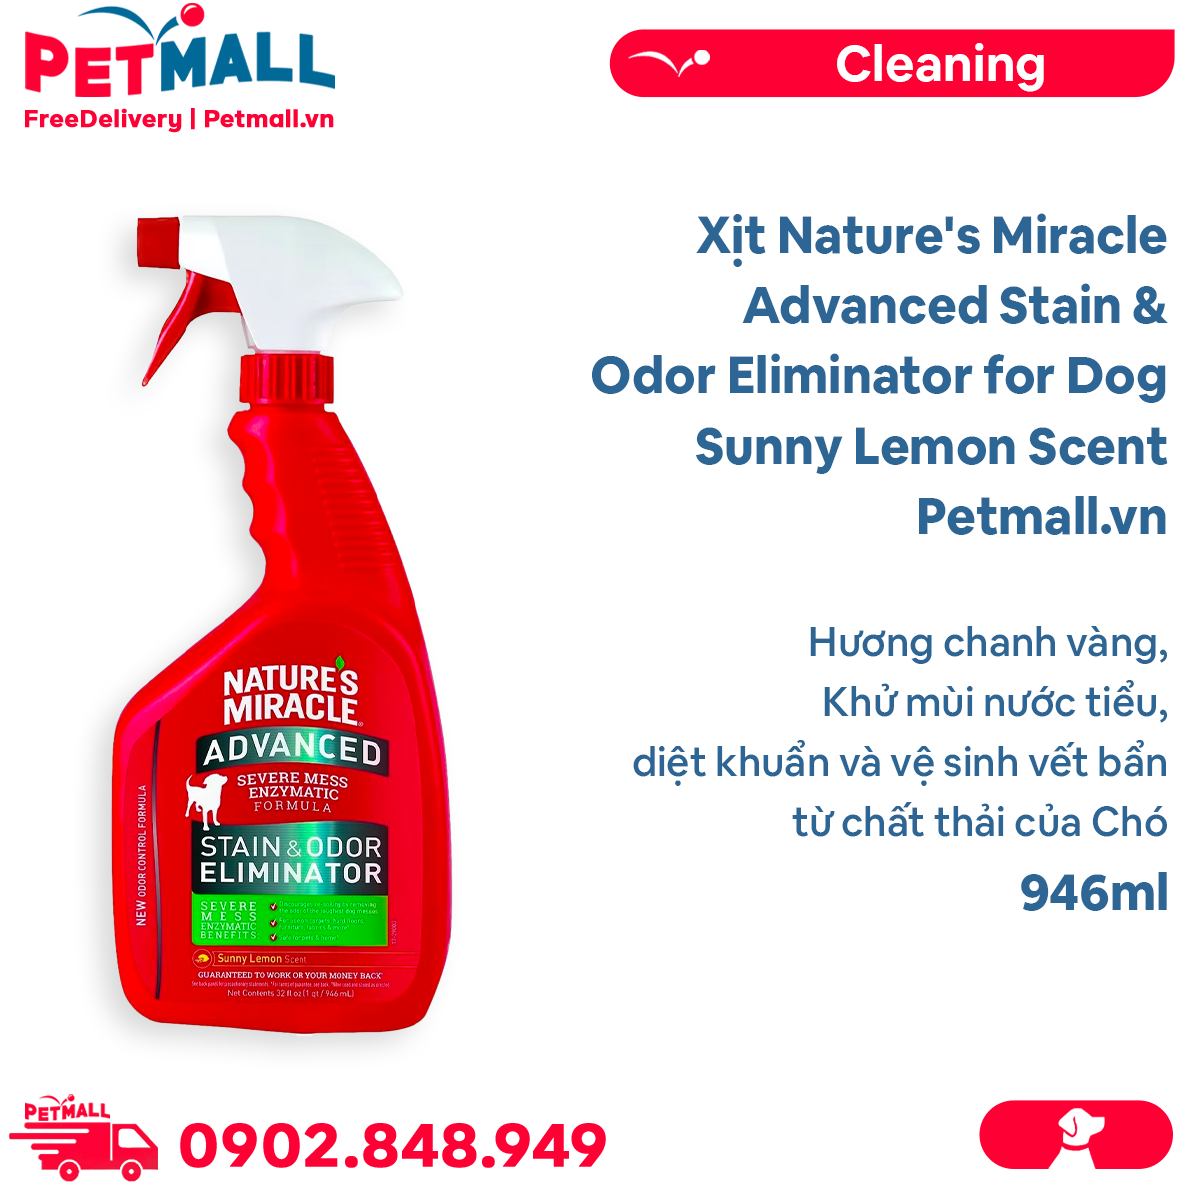 Xịt Nature's Miracle Advanced Stain & Odor Eliminator for Dog Sunny Lemon Scent 946ml - Hương chanh vàng, khử mùi nước tiểu, diệt khuẩn và vệ sinh vết bẩn từ chất thải của Chó Petmall